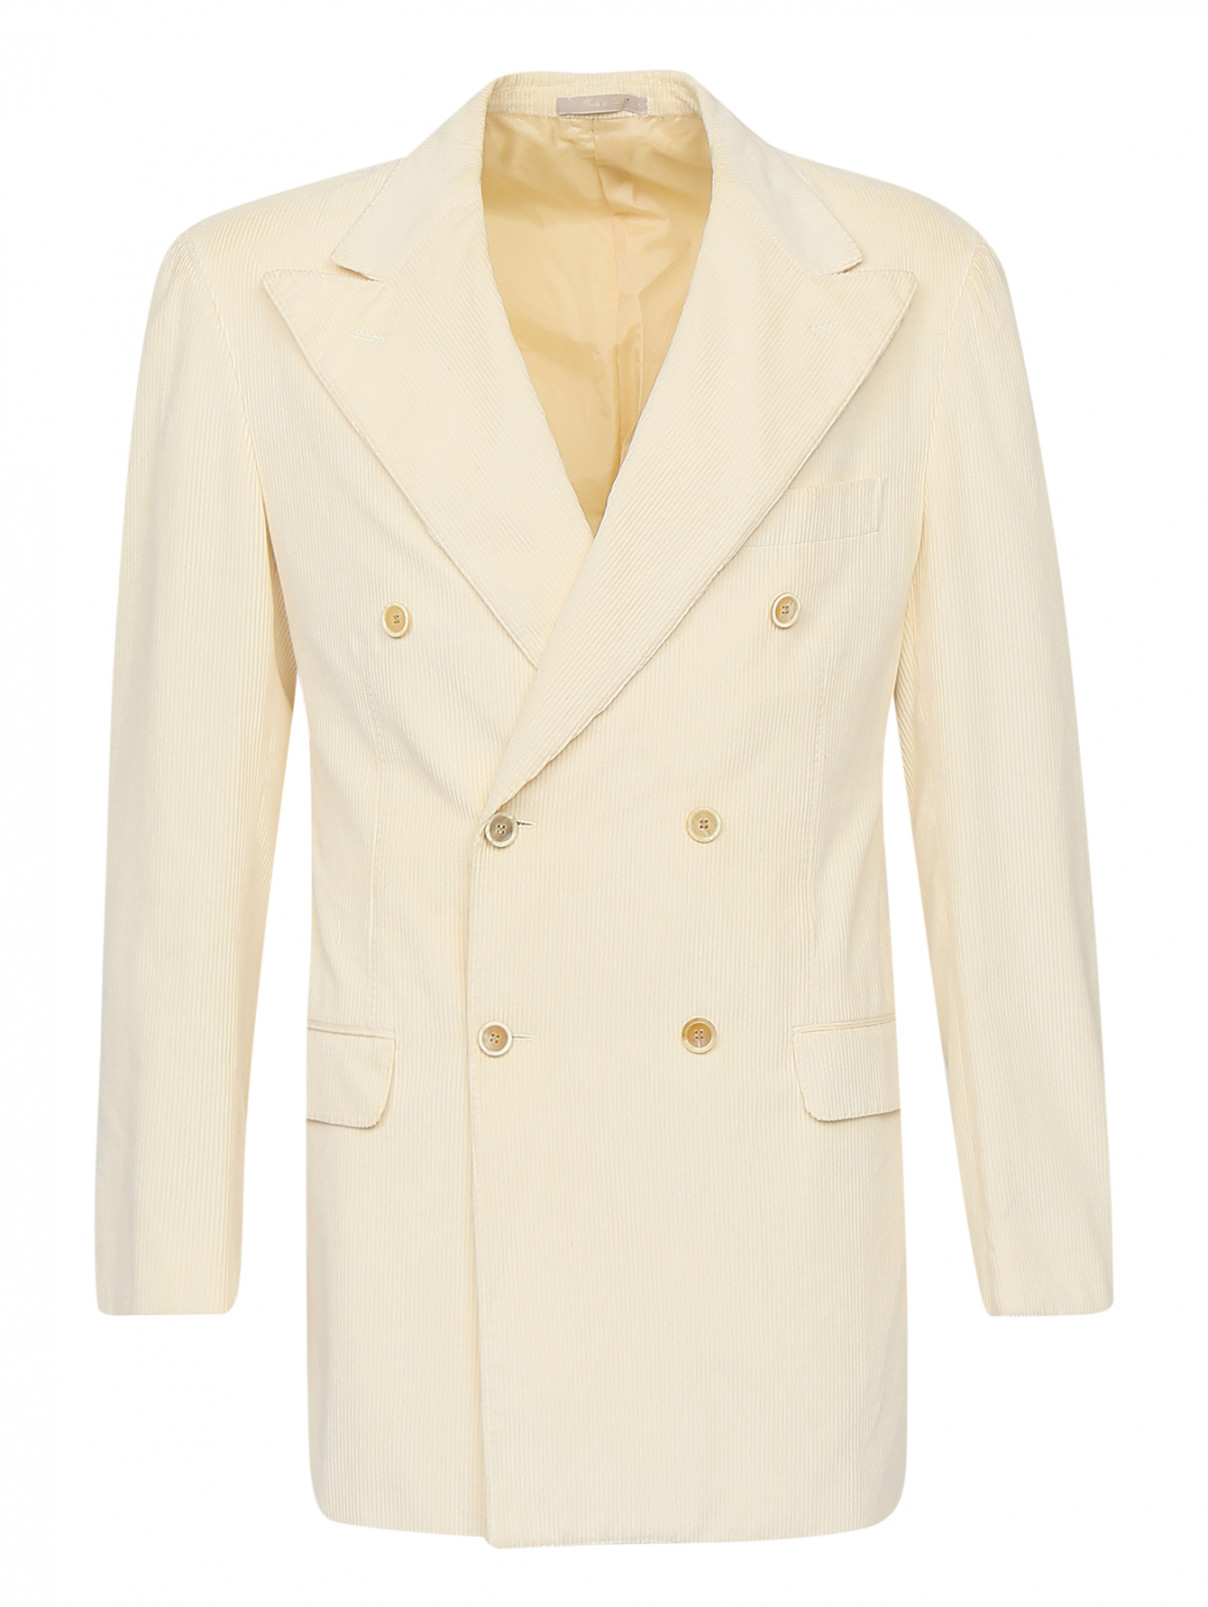 Пиджак из вельвета Baldessarini  –  Общий вид  – Цвет:  Белый